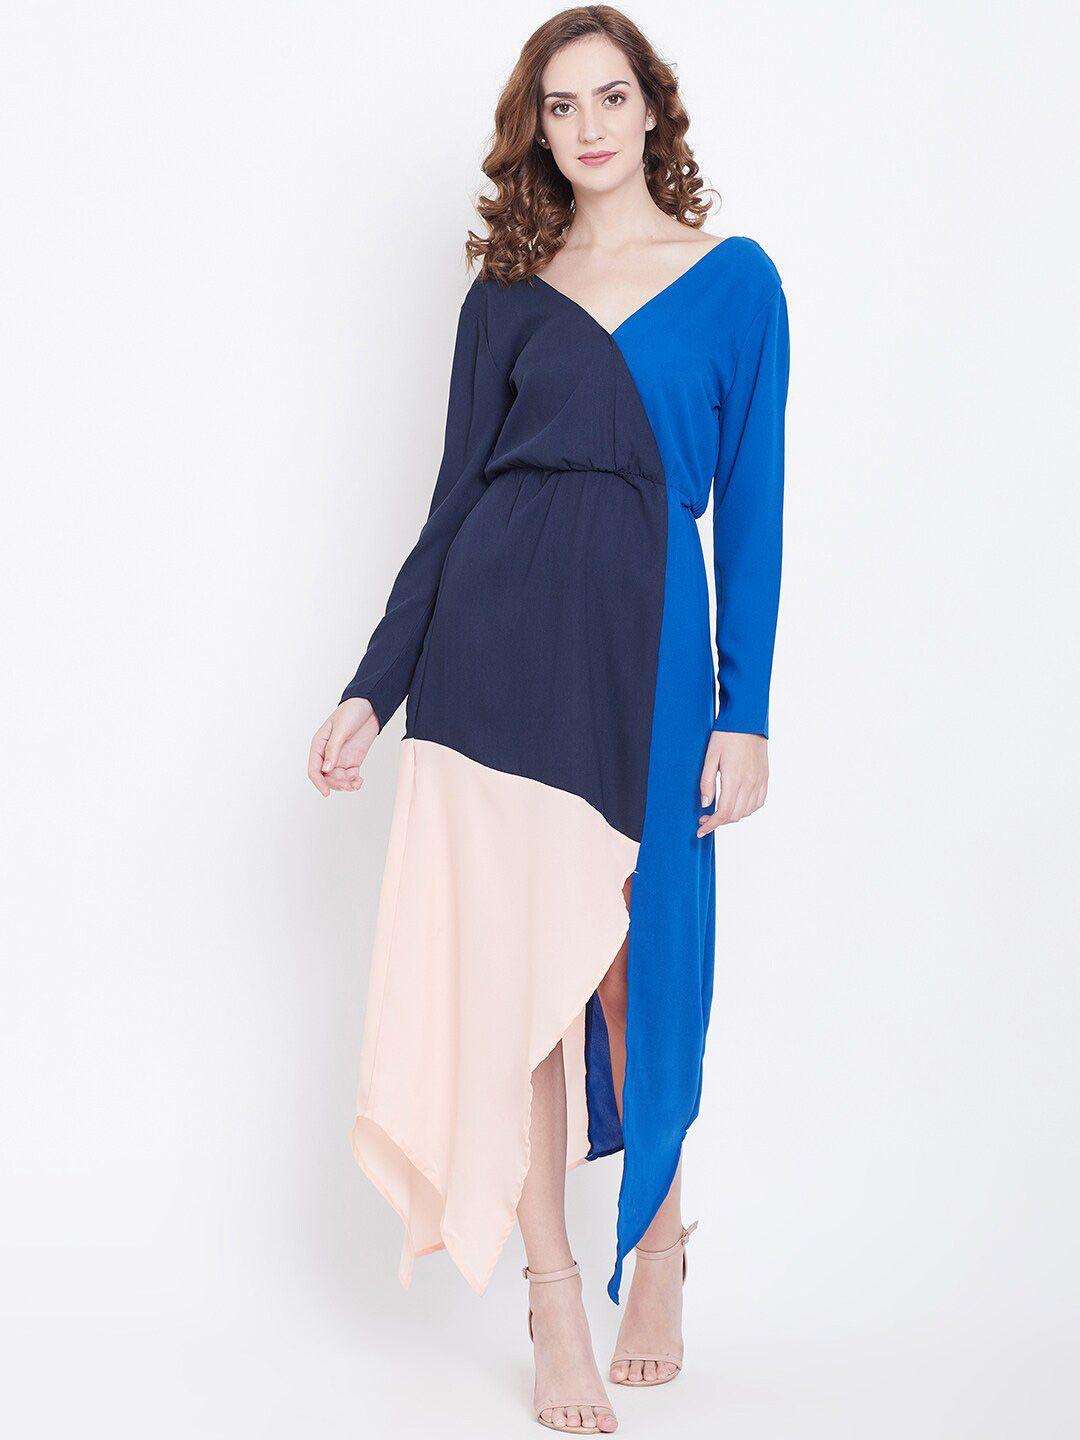 dodo-&-moa-colourblocked-asymmetric-fit-&flare-midi-dress